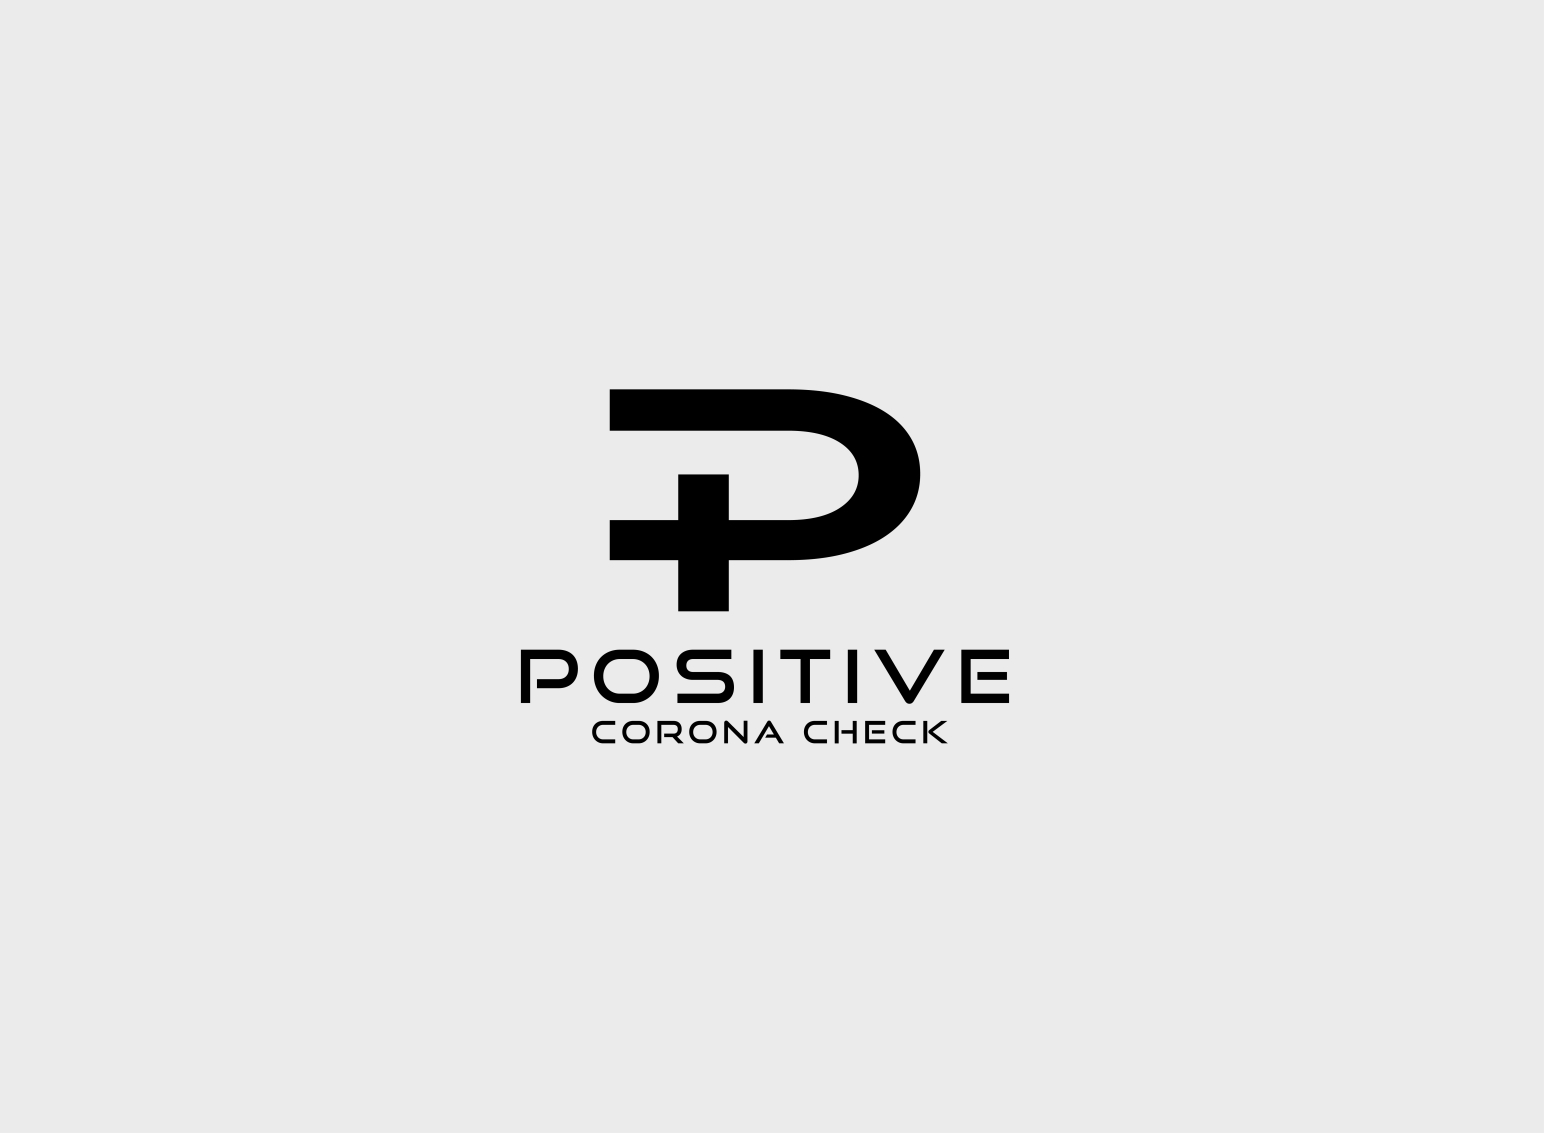 Positive concept logo design abstract human Vector Image